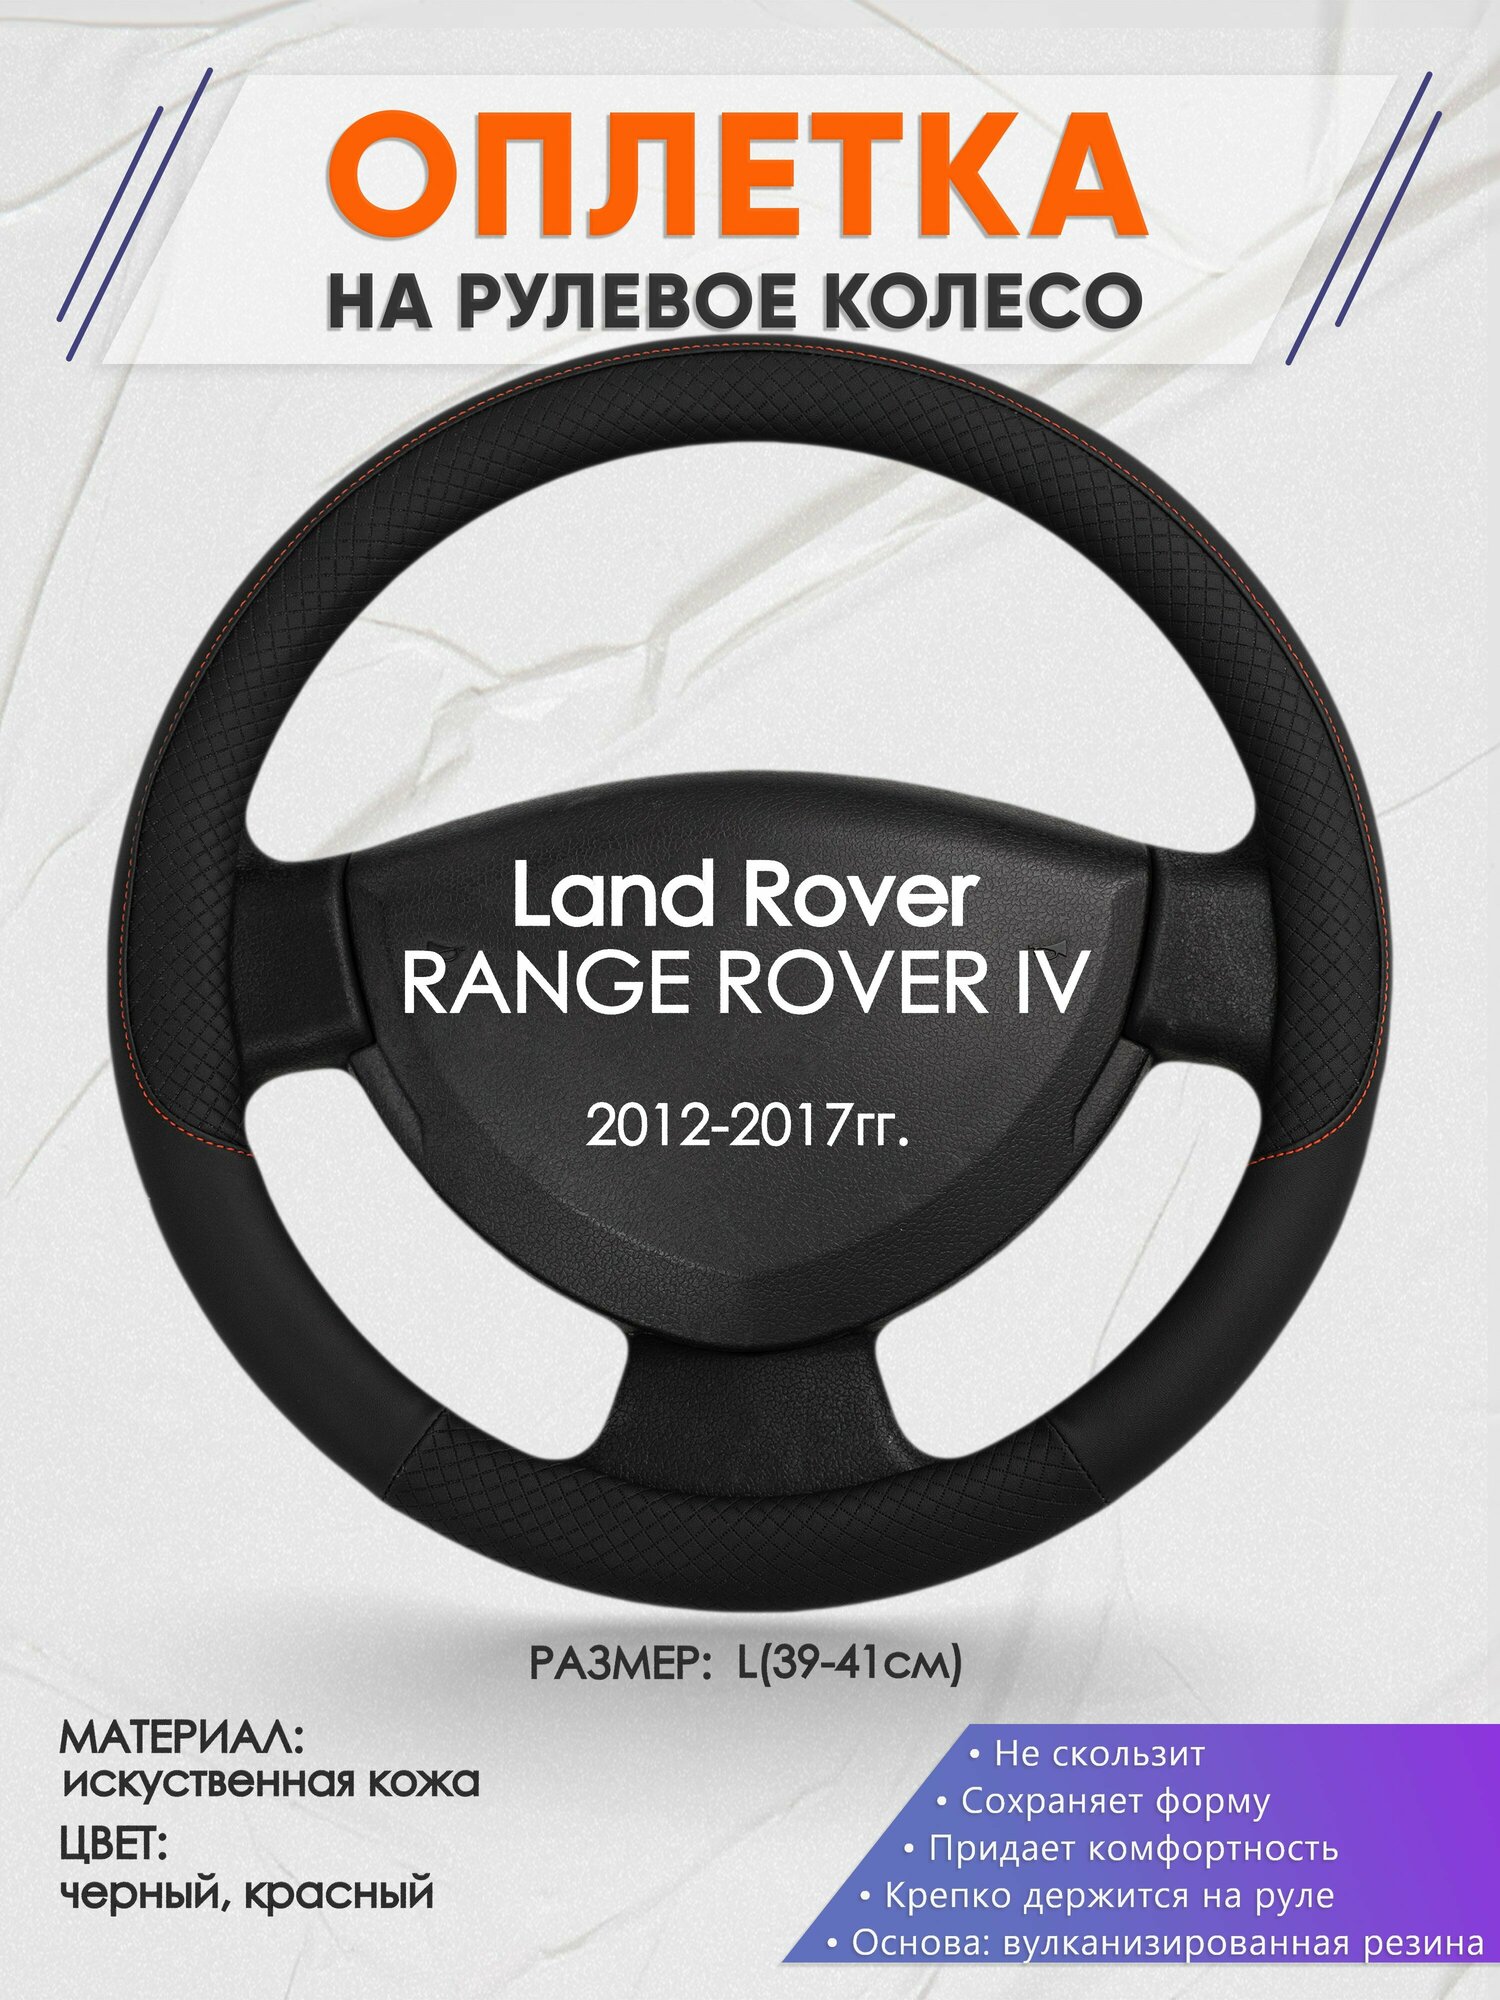 Оплетка на руль для Land Rover RANGE ROVER 4(Ленд Ровер Рендж Ровер) 2012-2017, L(39-41см), Искусственная кожа 18